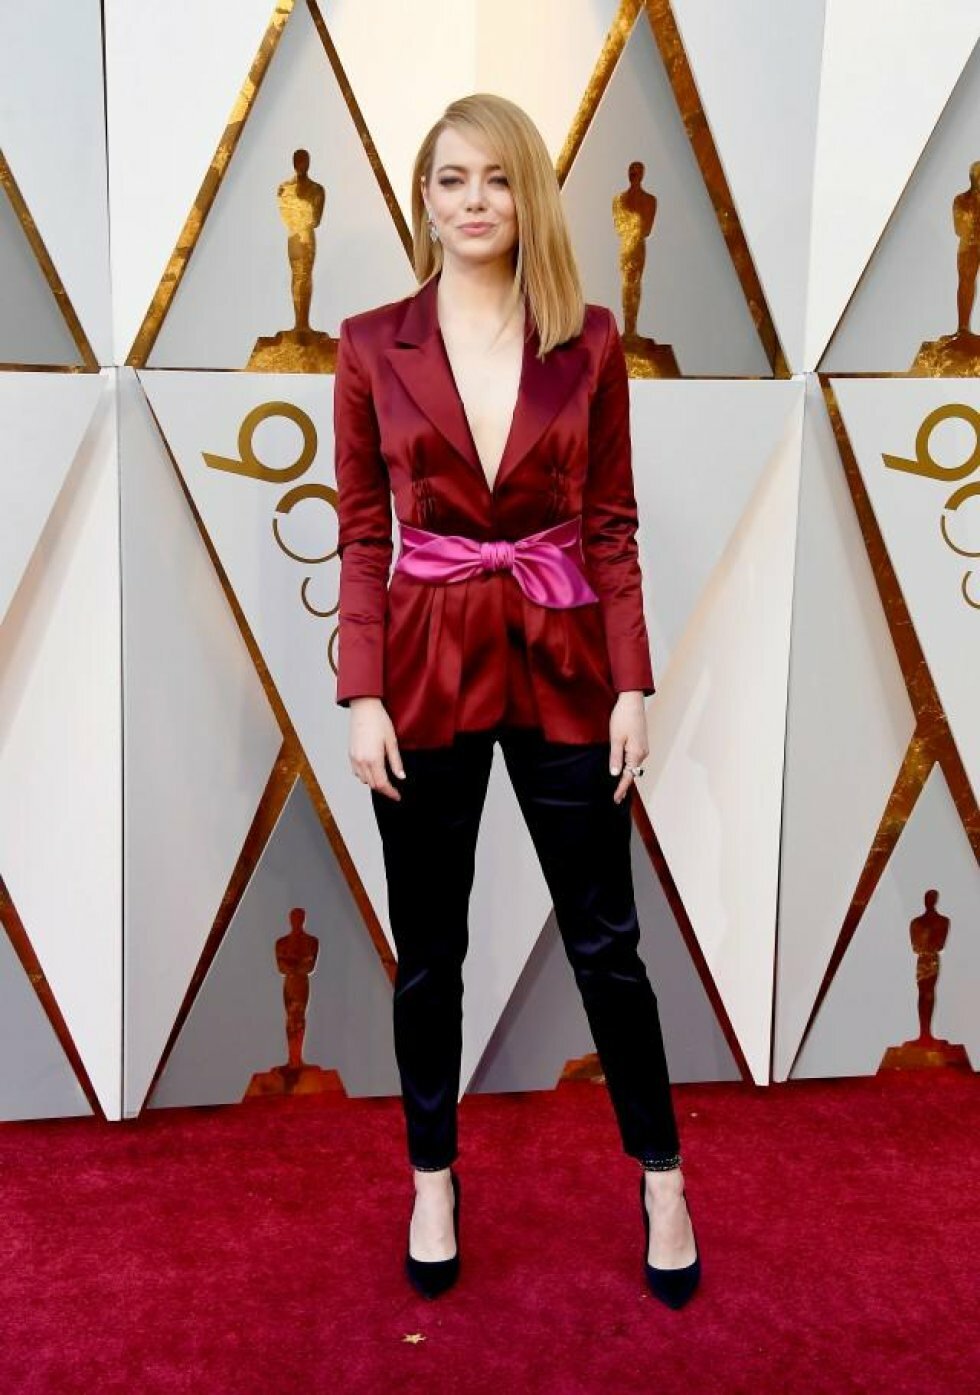 Entertainment Tonight - Oscars Red Carpet Fashion: Hvilken stjerne bar hvad?